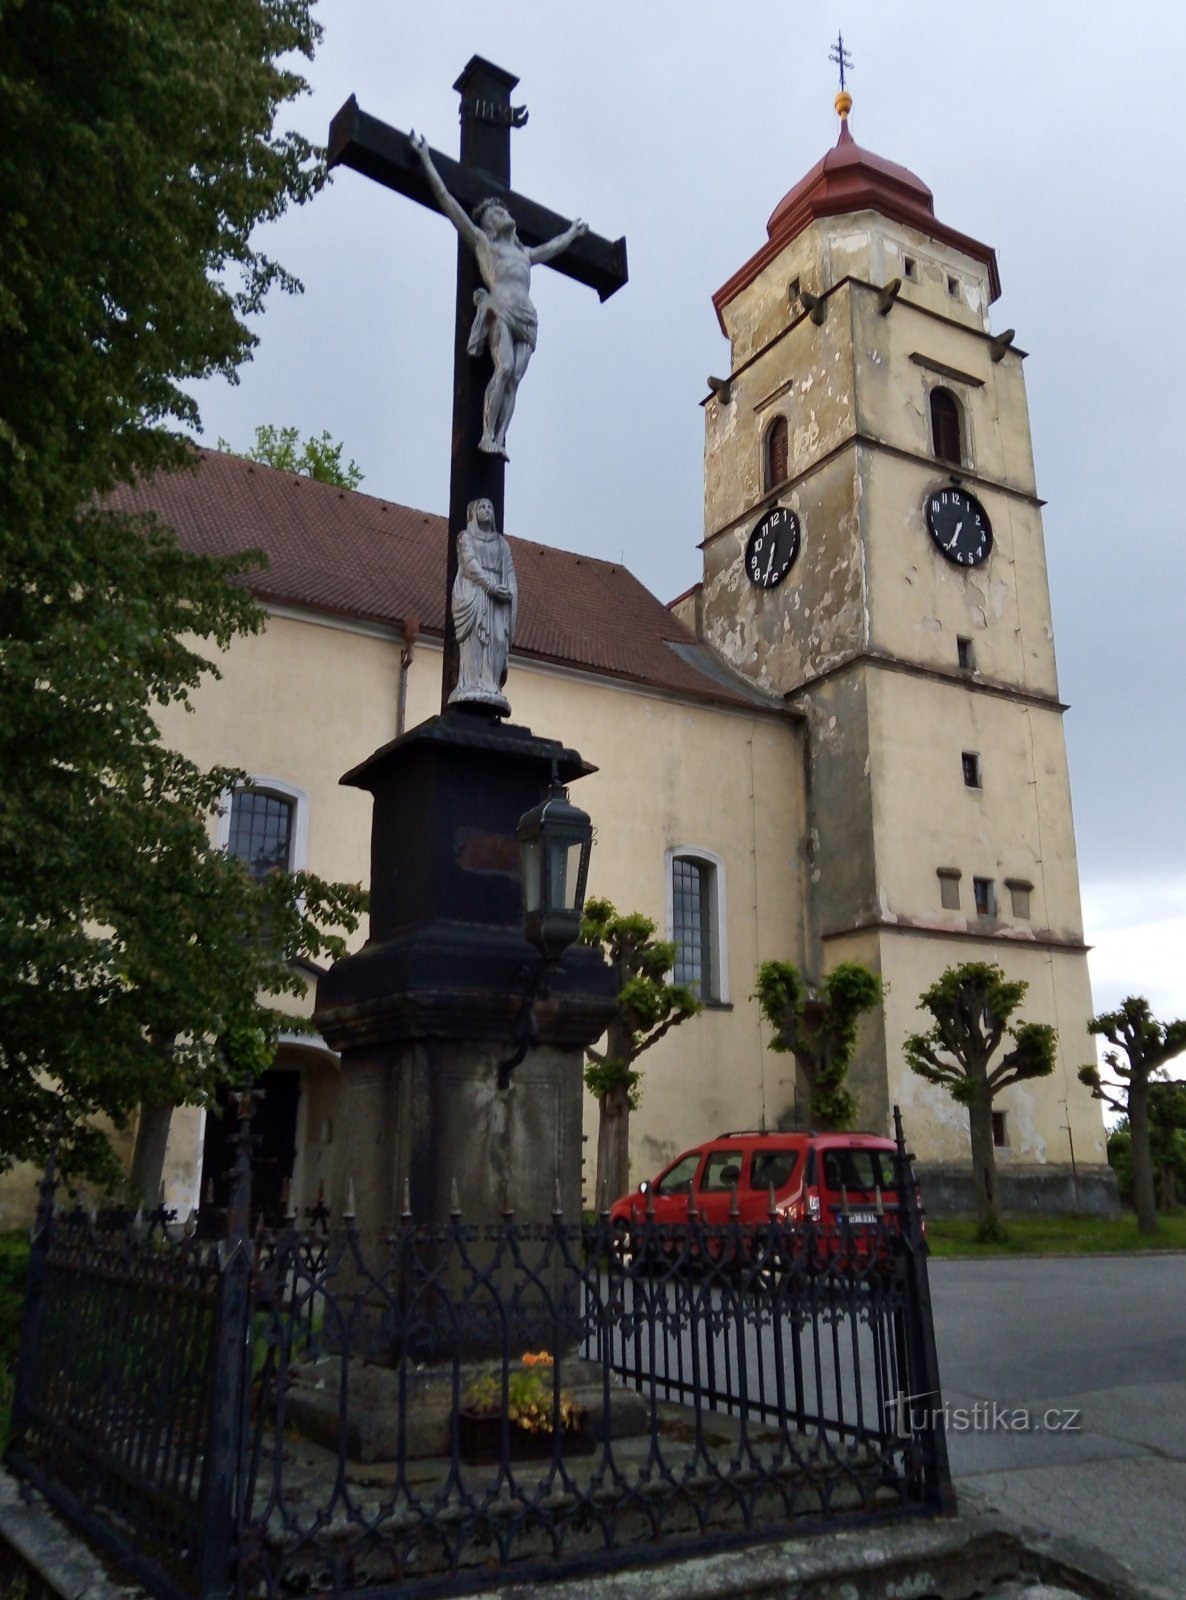 nhà thờ và cây thánh giá ở phía trước nó được liệt kê